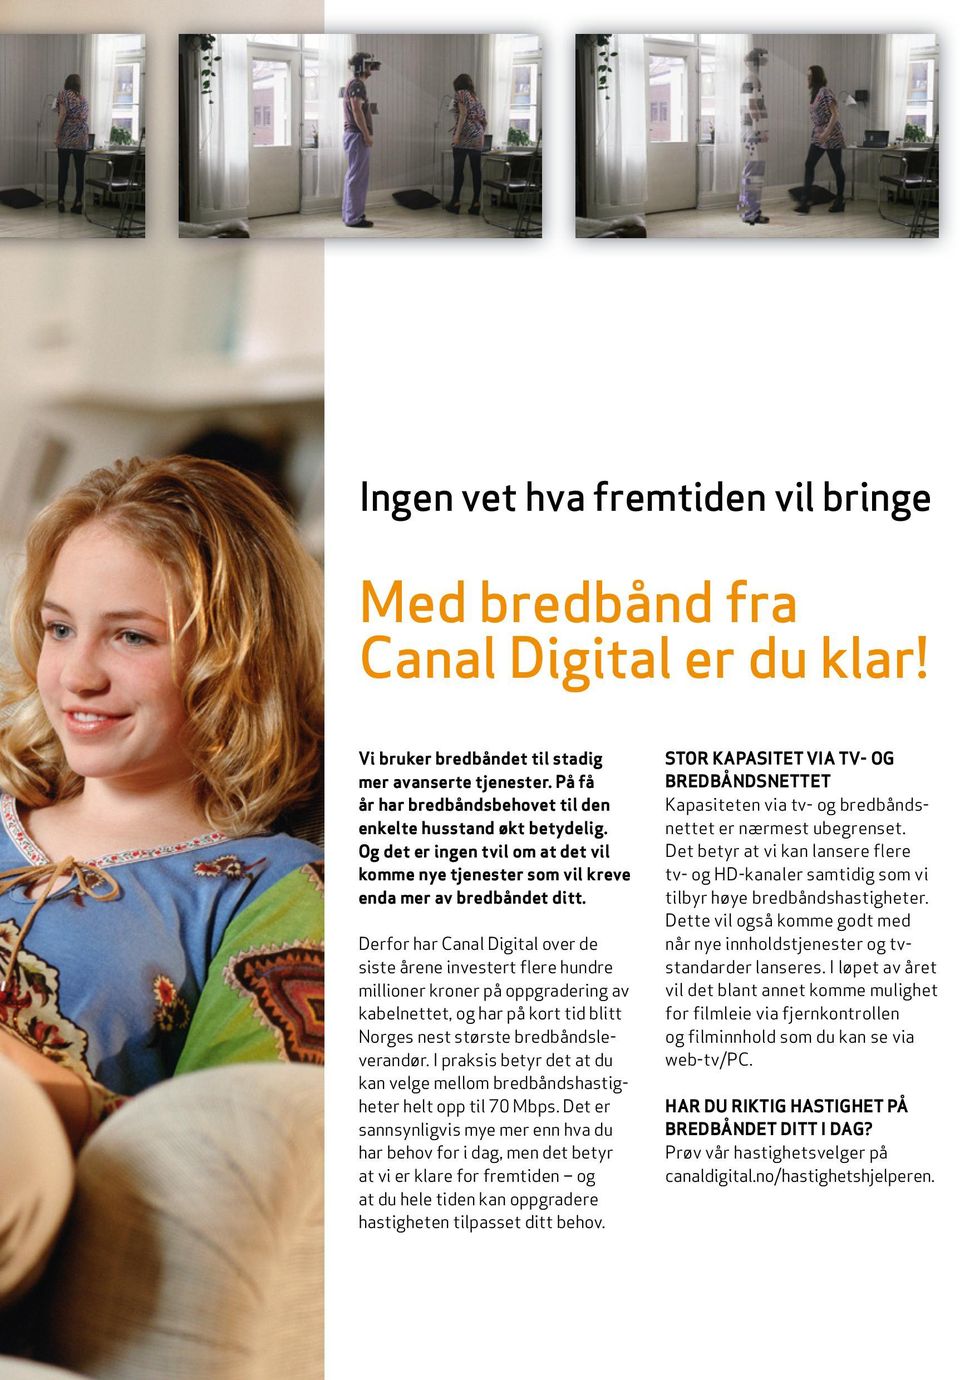 Derfor har Canal Digital over de siste årene investert flere hundre millioner kroner på oppgradering av kabelnettet, og har på kort tid blitt Norges nest største bredbåndsleverandør.